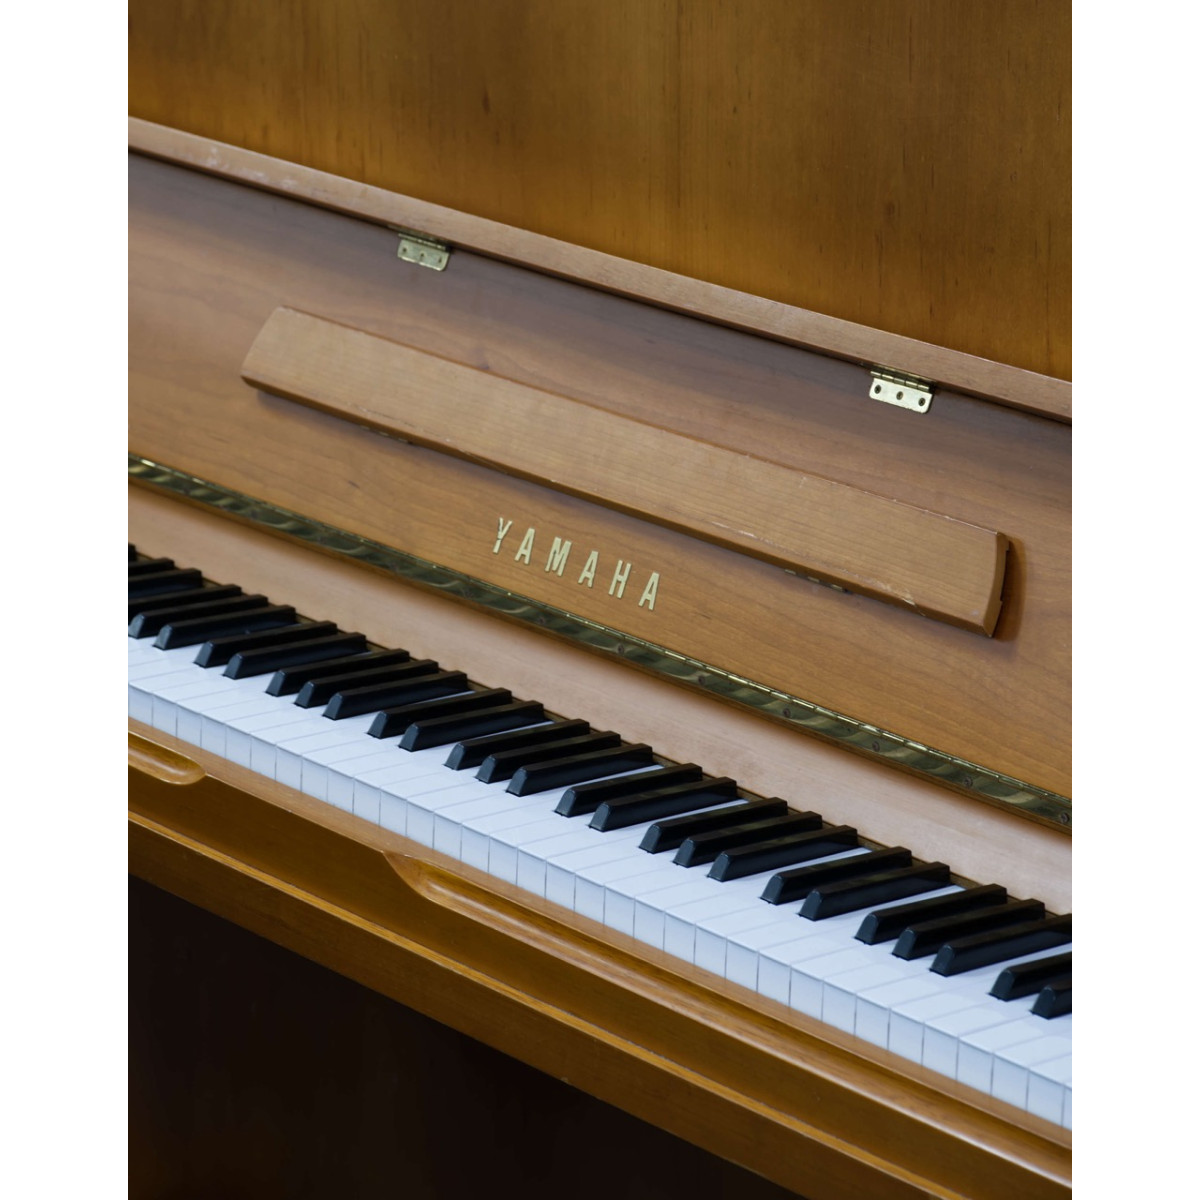 Yamaha U1 N Klavier, Holzoberfläche Kirschbaum, gebraucht kaufen bei Pianelli, Ansicht: Klaviatur fern